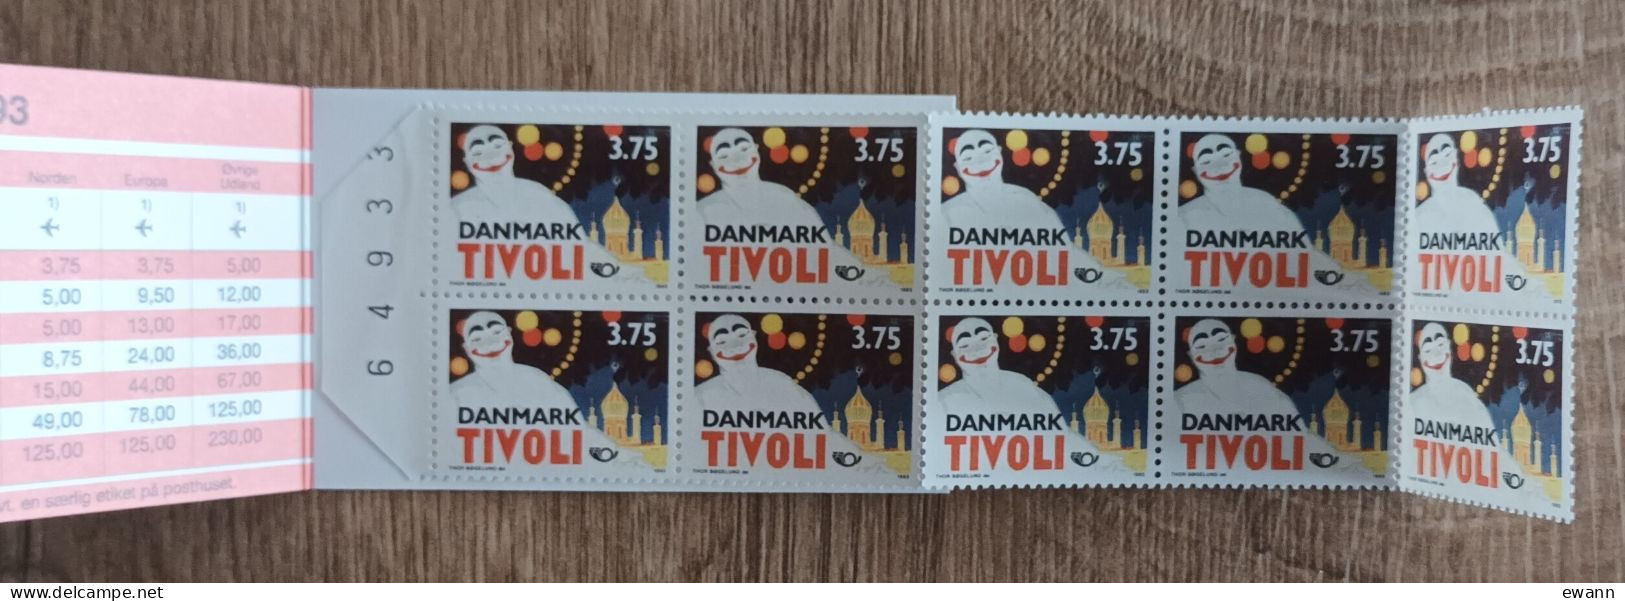 Danemark - Carnet YT N°C1057 - Norden / Tourisme Dans Les Régions Nordiques / Tivoli - 1993 - Neuf - Booklets